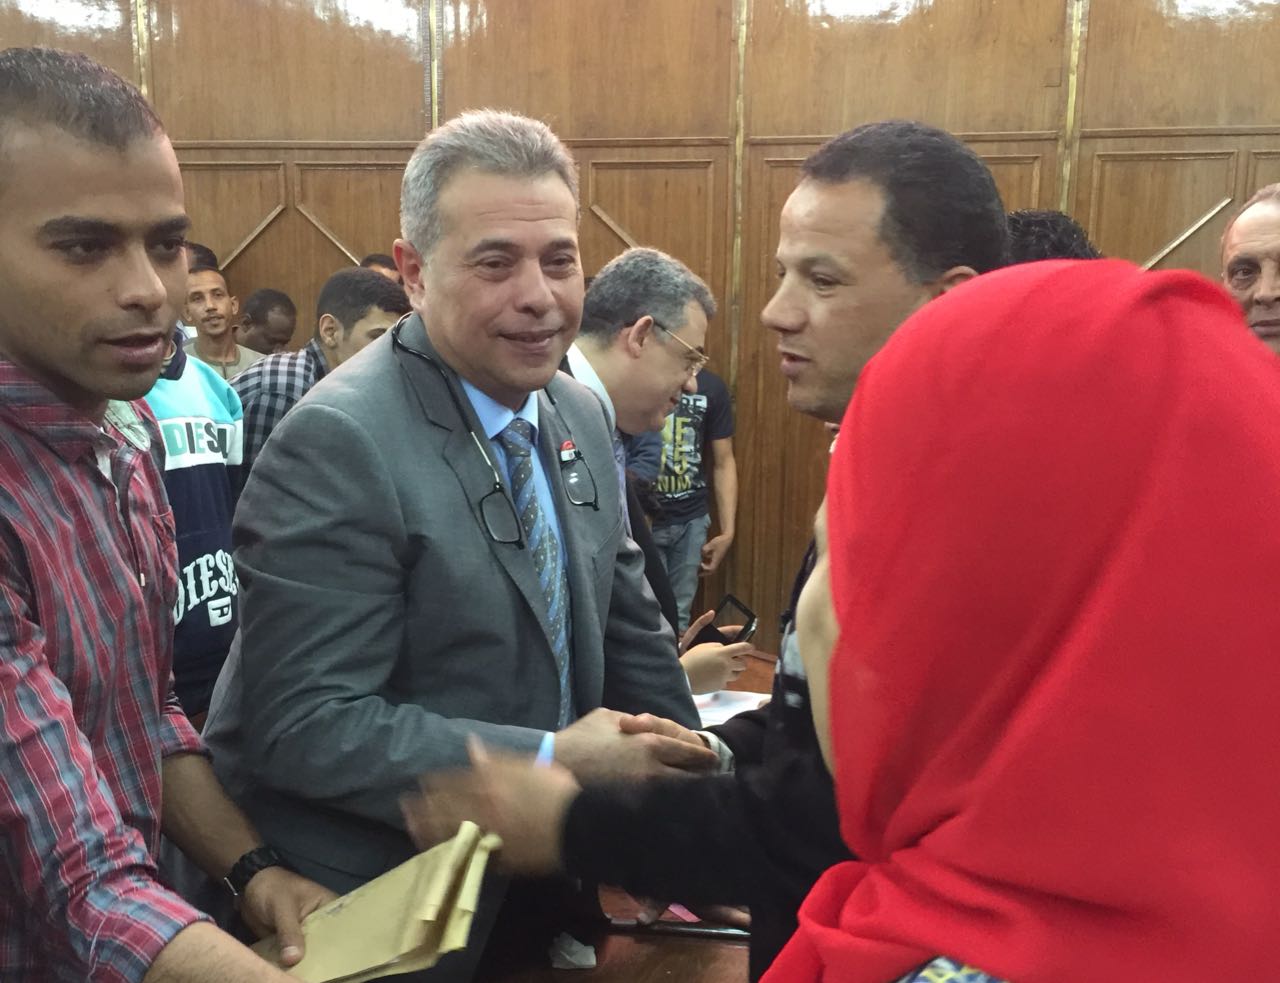 الحكم بسجن الاعلامي المصري توفيق عكاشة لإدانته بتزوير شهادة الدكتوراه لدخول البرلمان